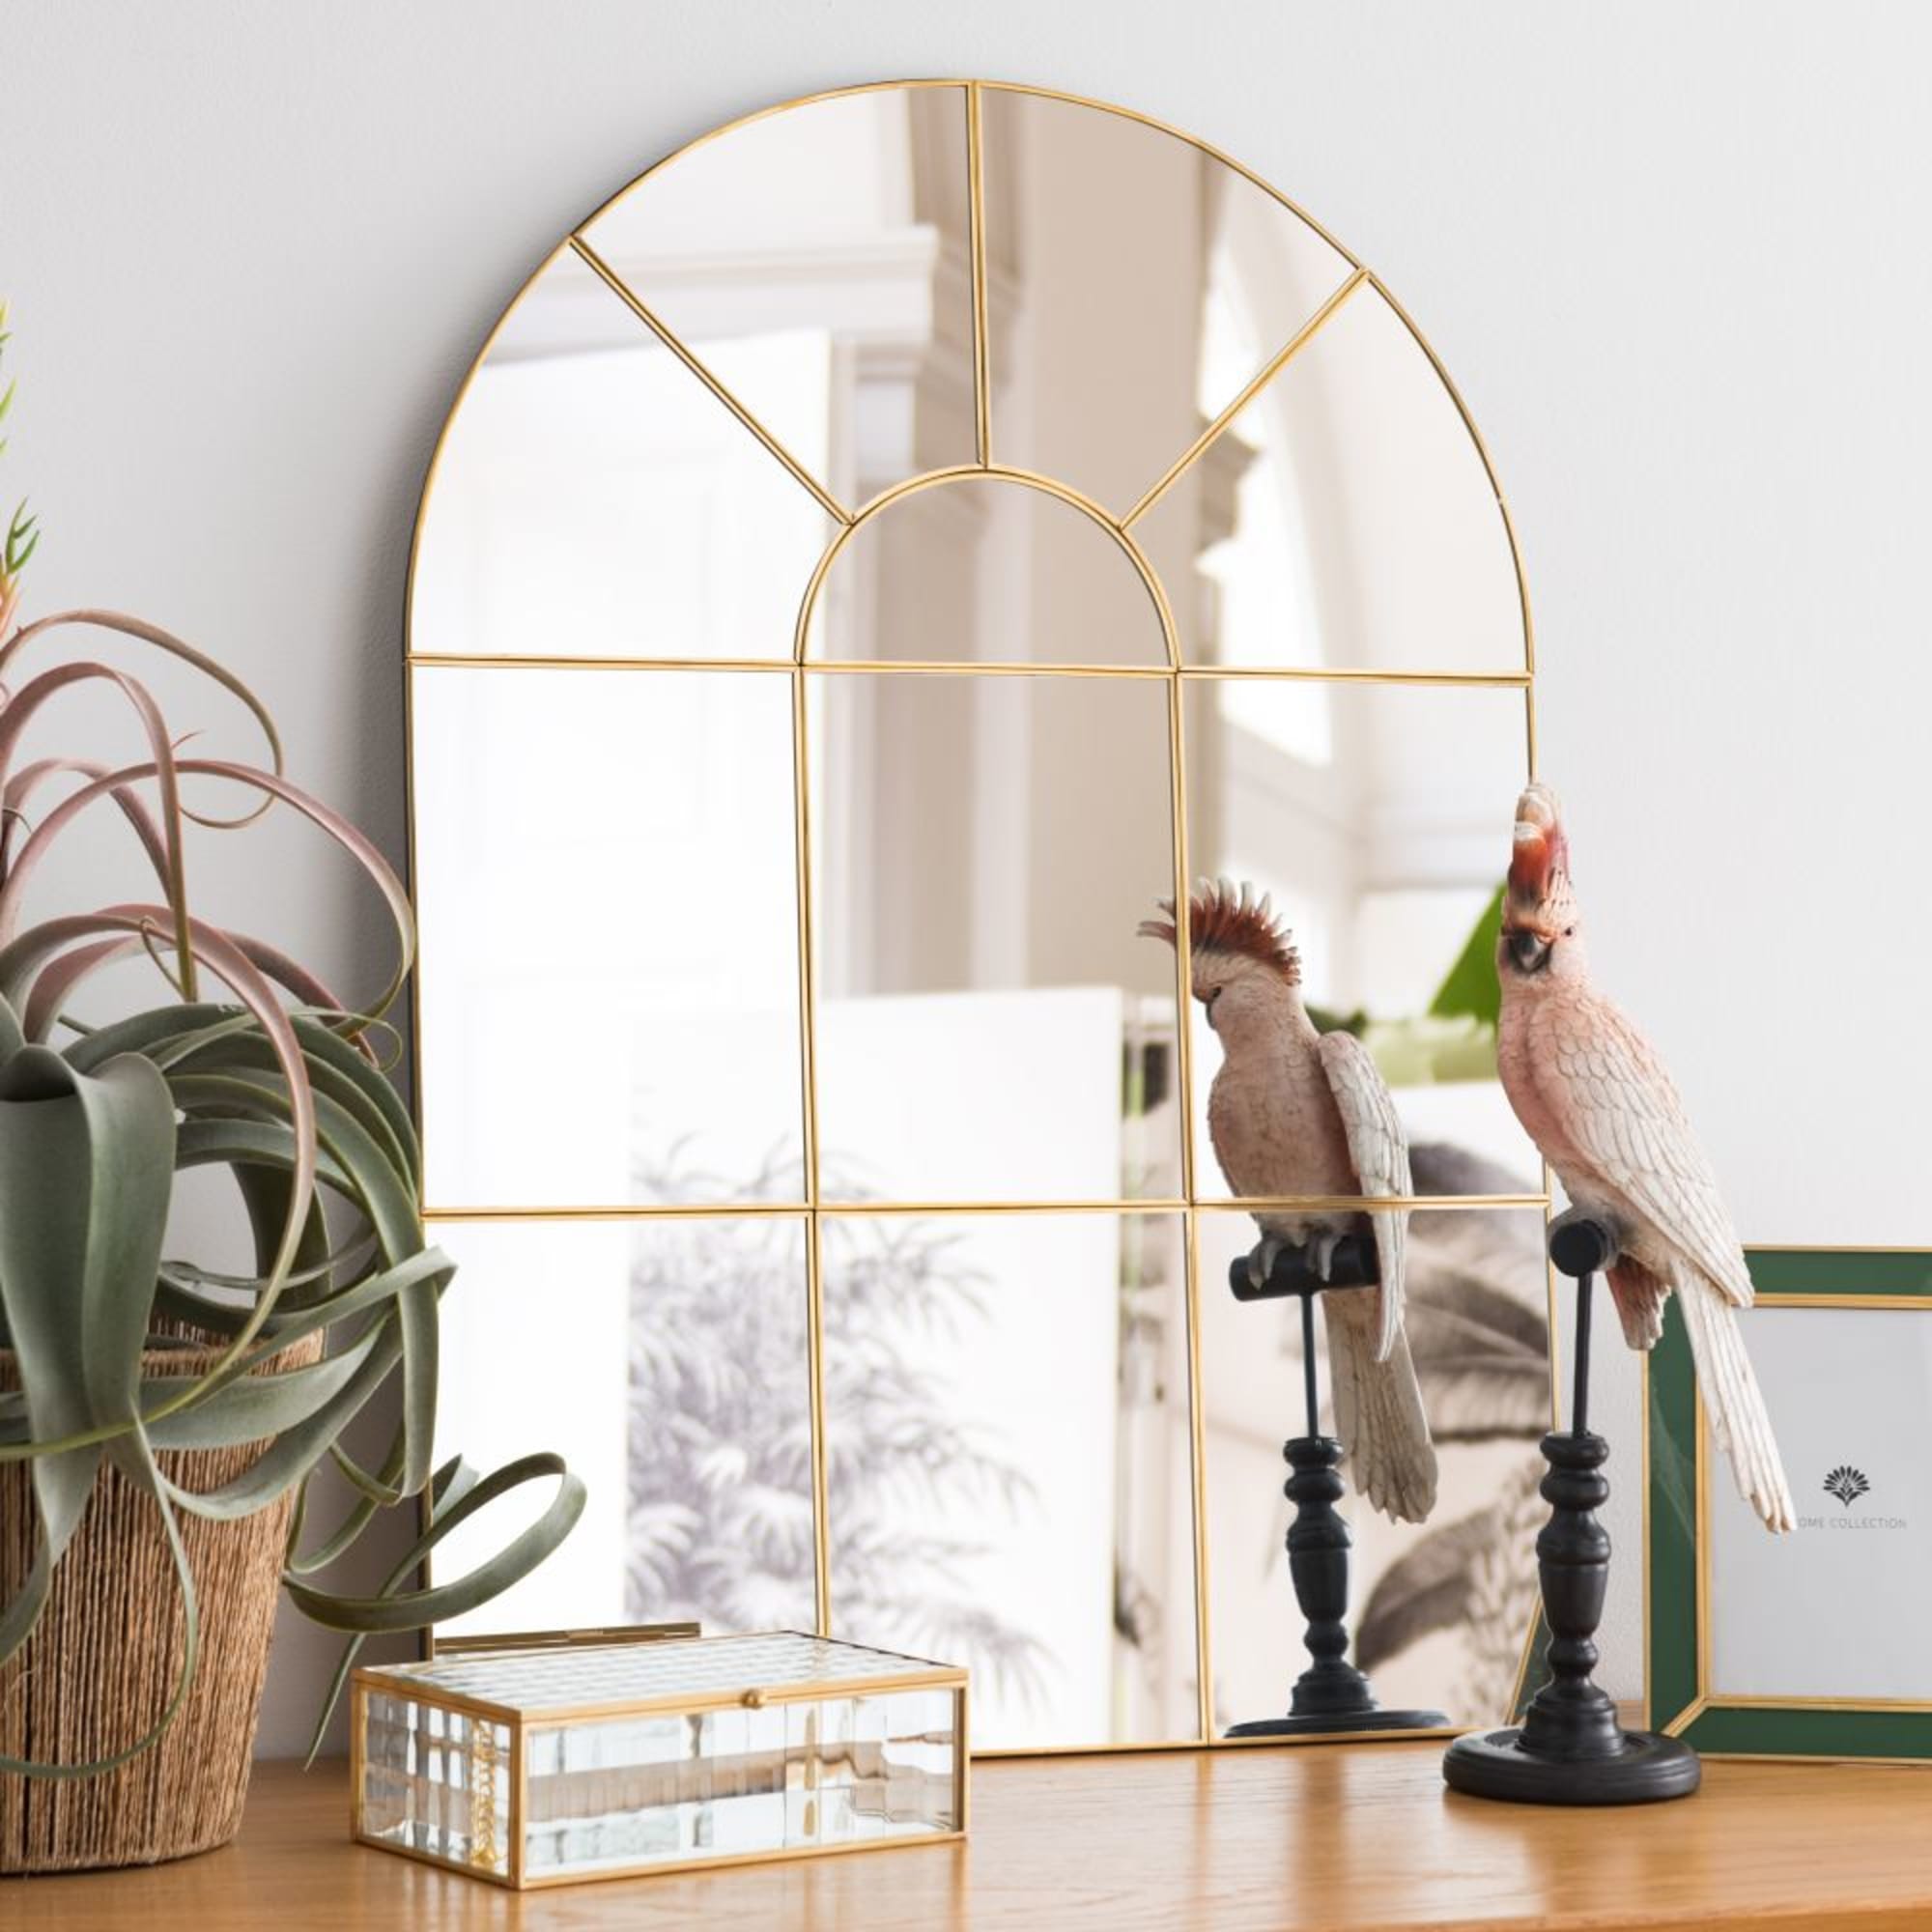 Orangerie Miroir en métal doré - Maisons du monde